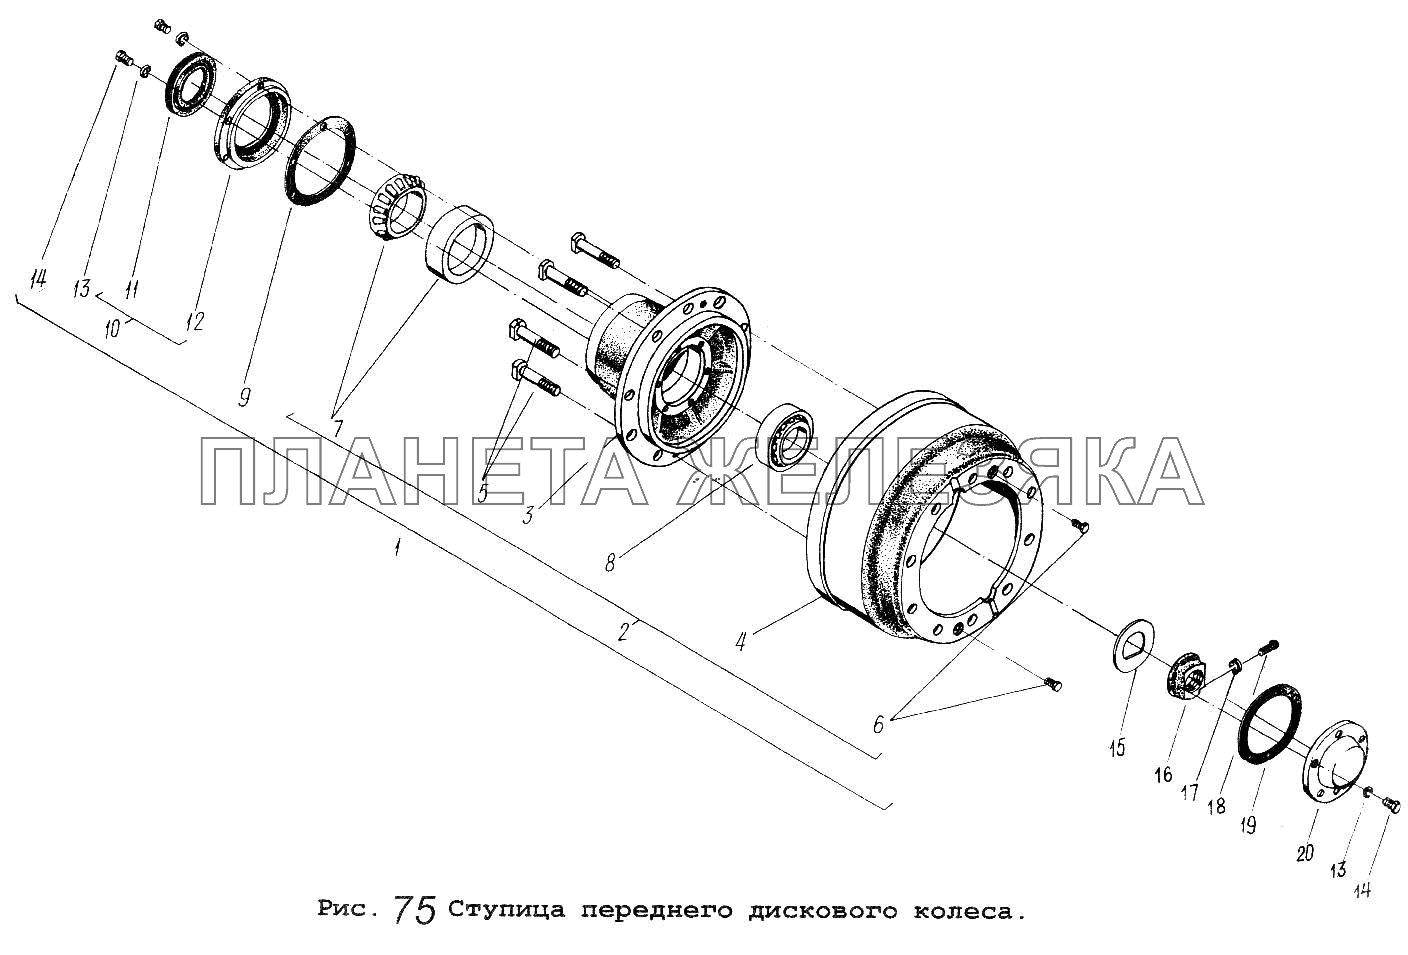 Ступица переднего дискового колеса МАЗ-53371